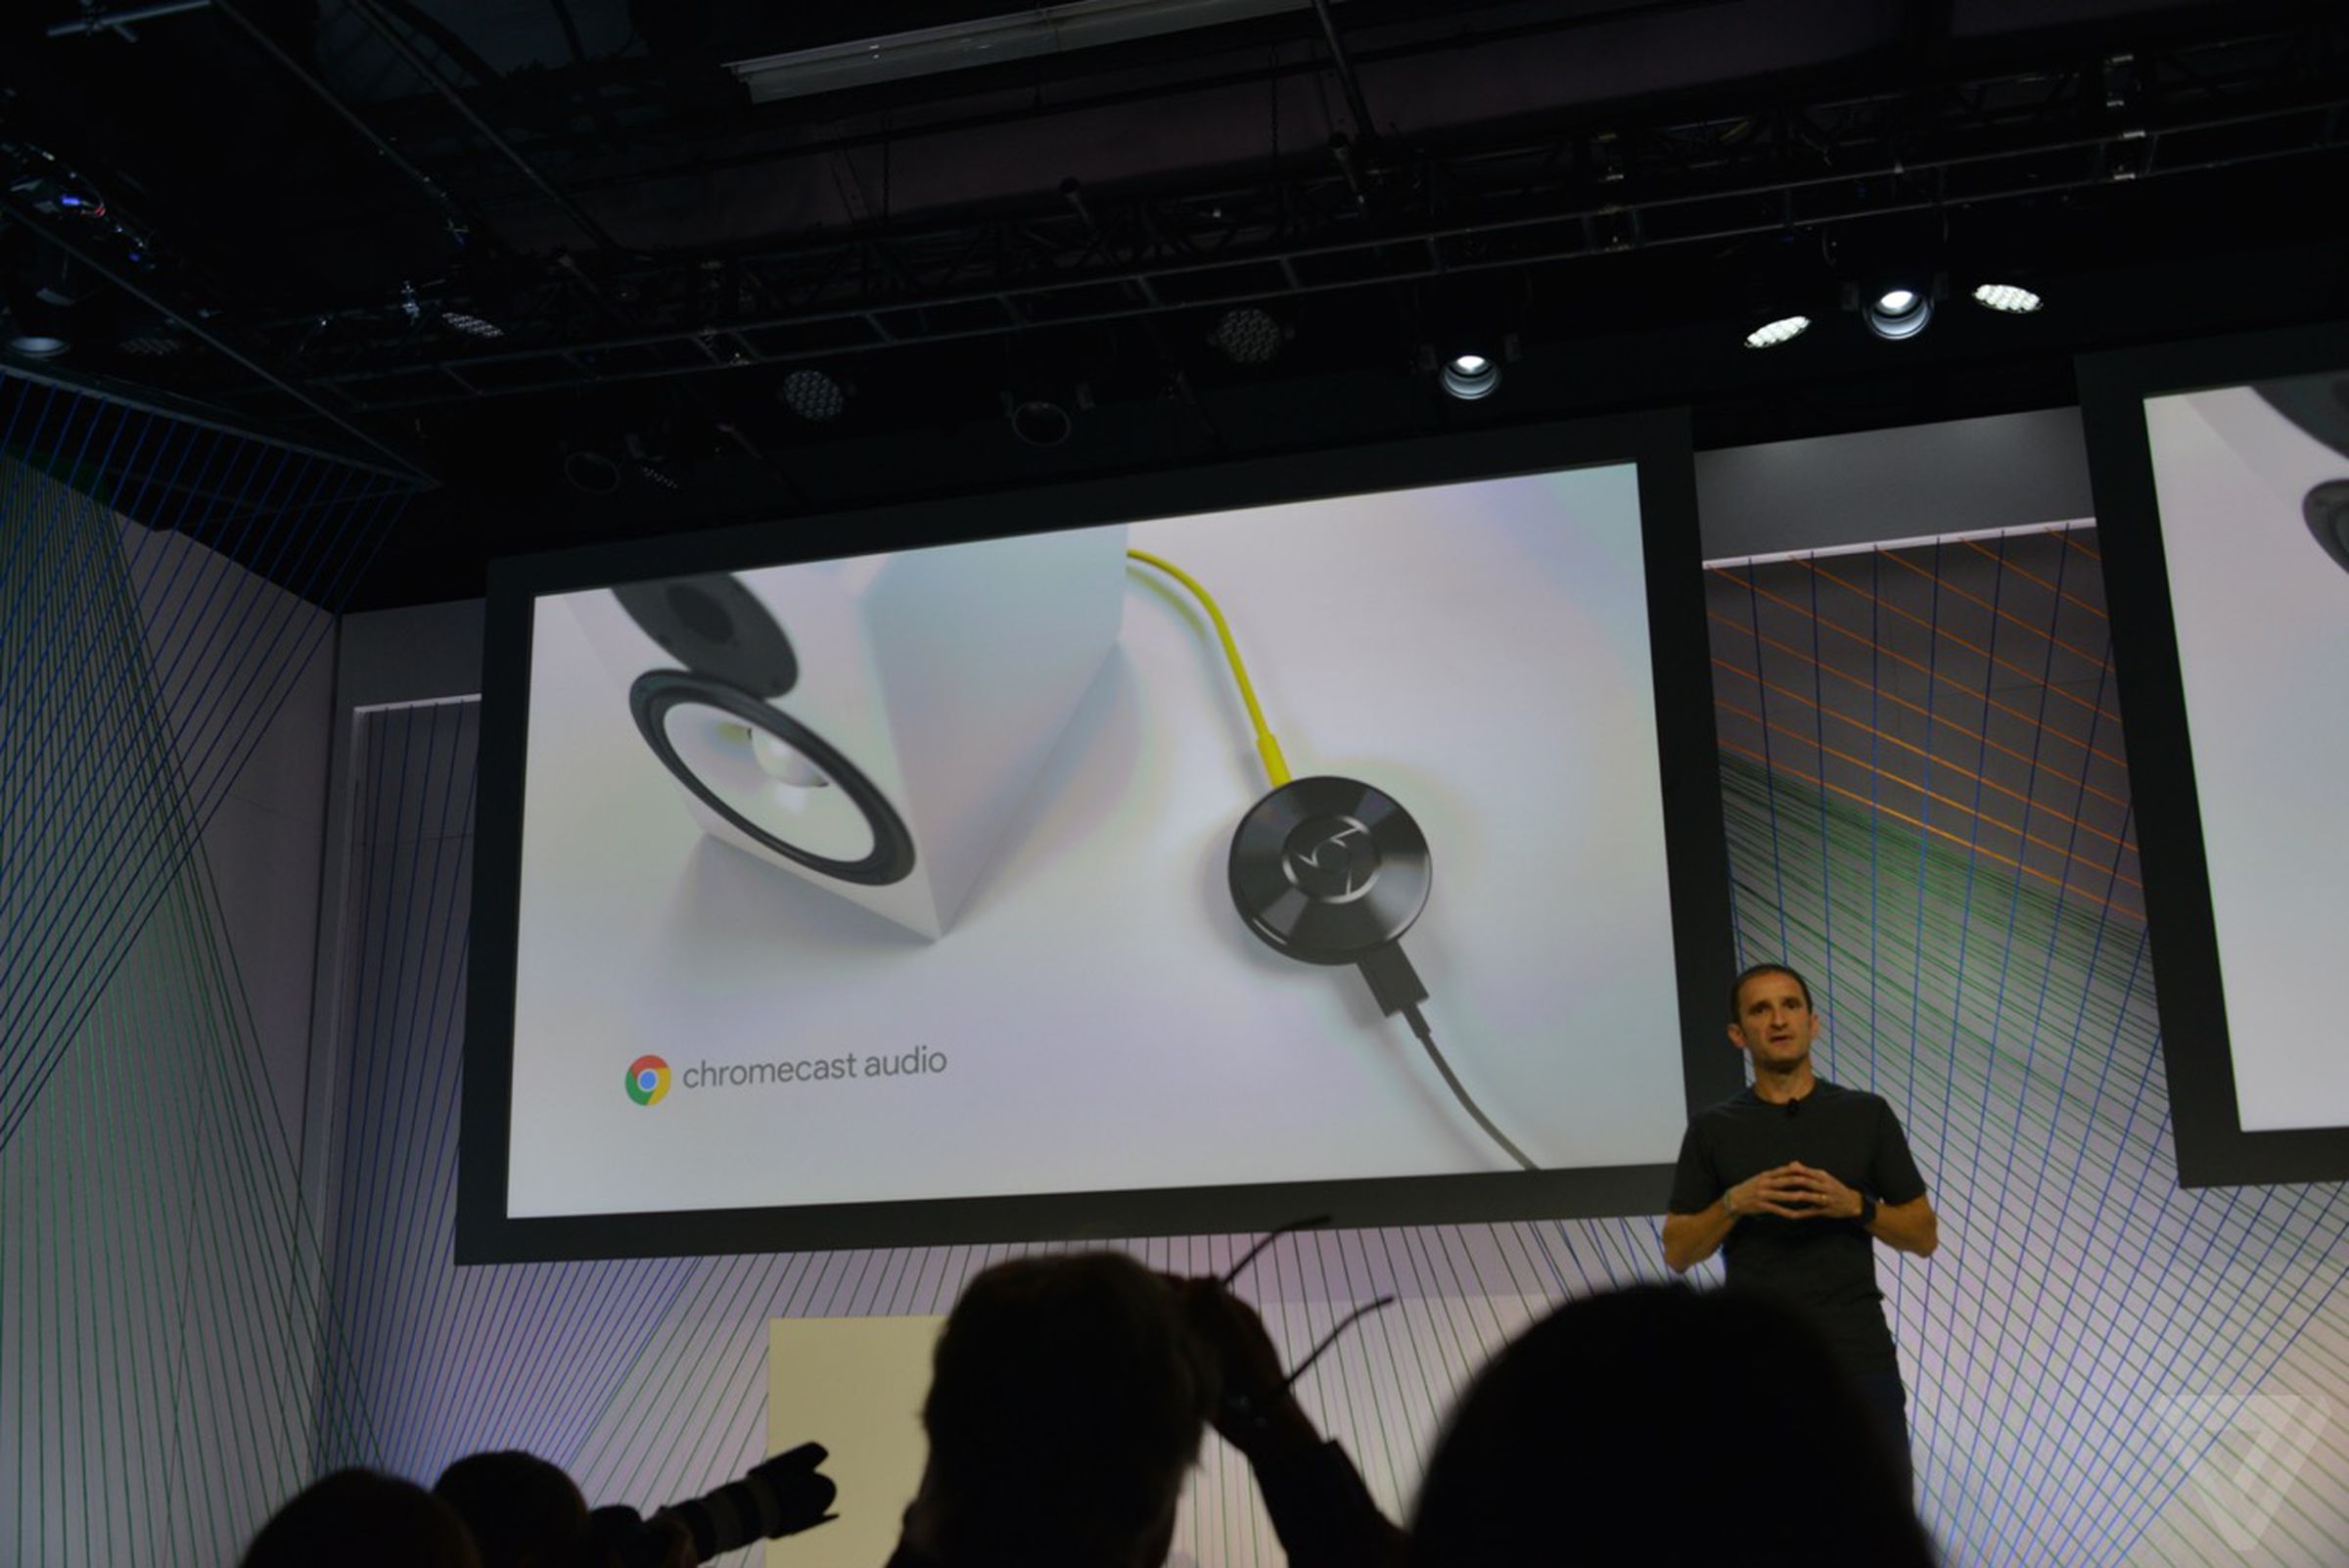 New Google Chromecast photos